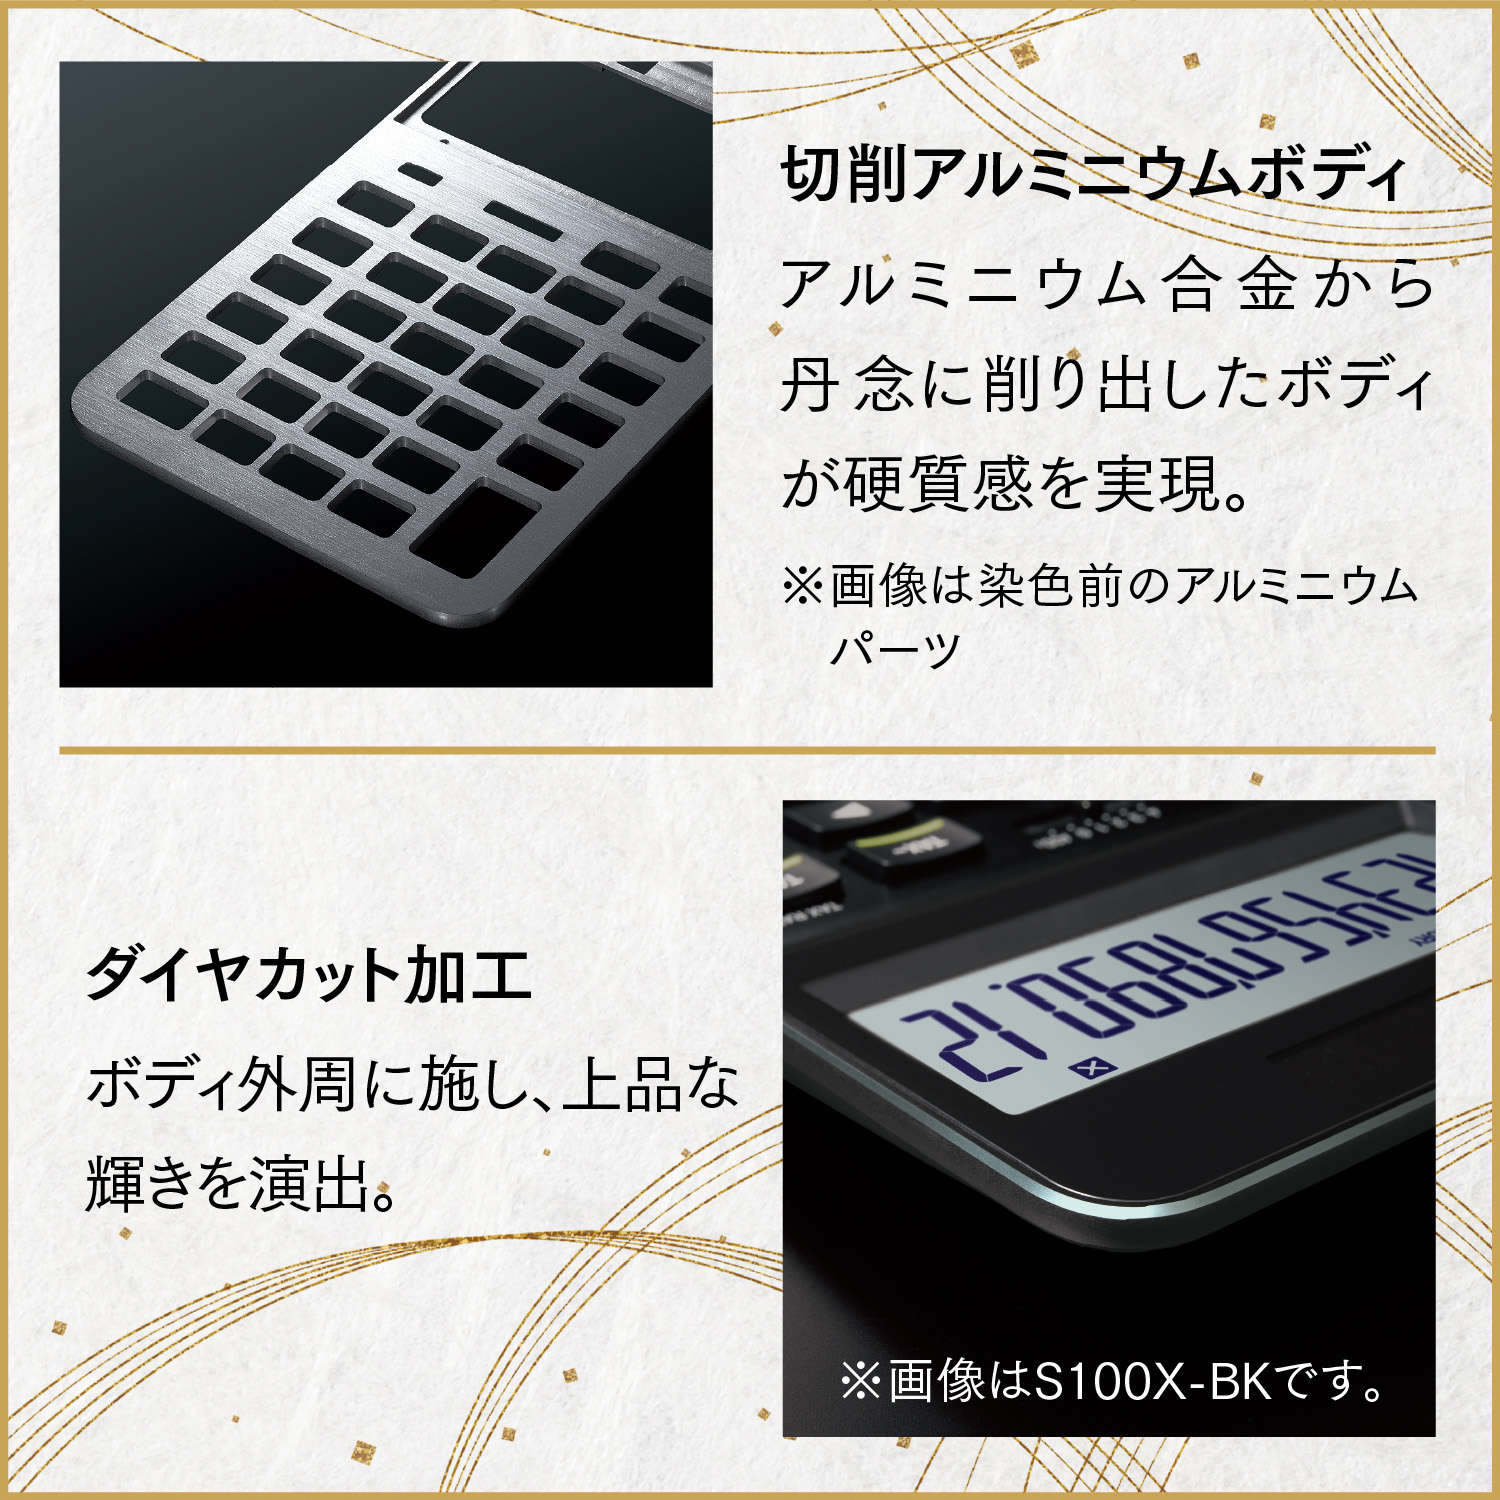 カシオ電卓　S100NB-BK　＜名入れ有り＞　hi011-085